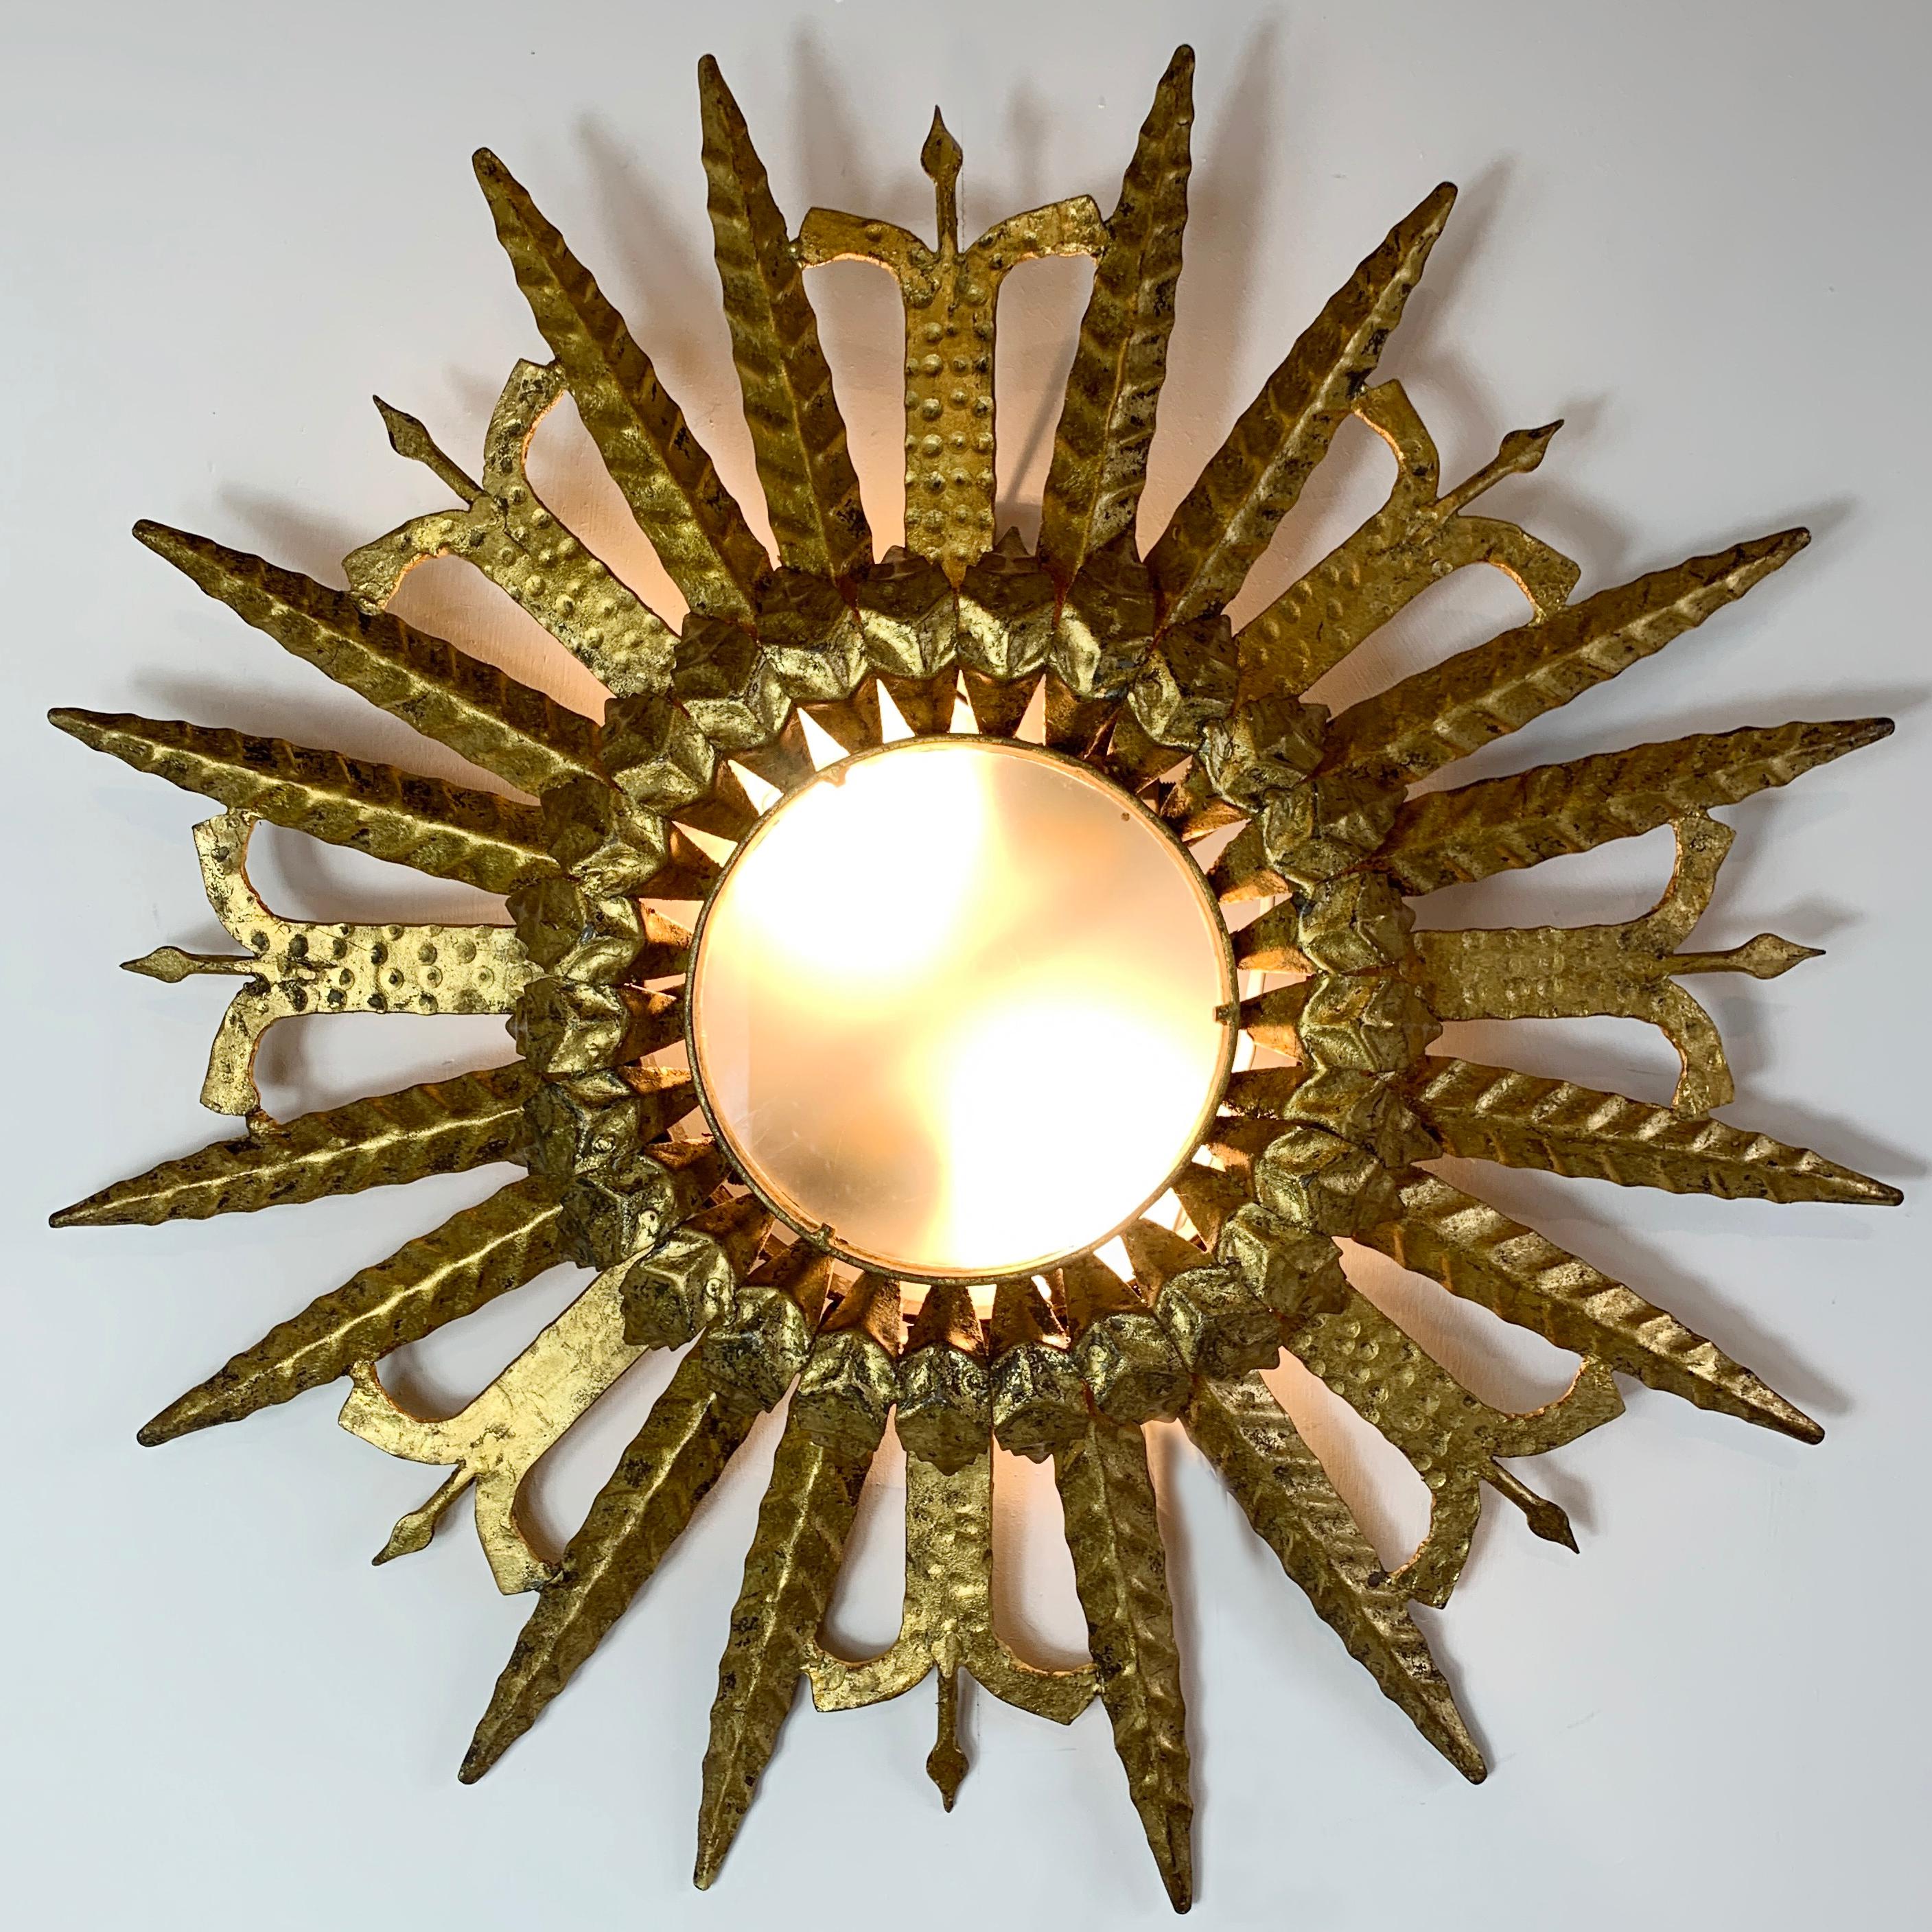 Spanische Deckenleuchte aus vergoldetem Eisen mit Sonnenschliff aus den 1950er Jahren

Ein unglaublicher spanischer Sonnenaufgang aus vergoldetem Eisen mit zwei Lampenfassungen hinter dem undurchsichtigen Glas 

Dies ist ein wirklich